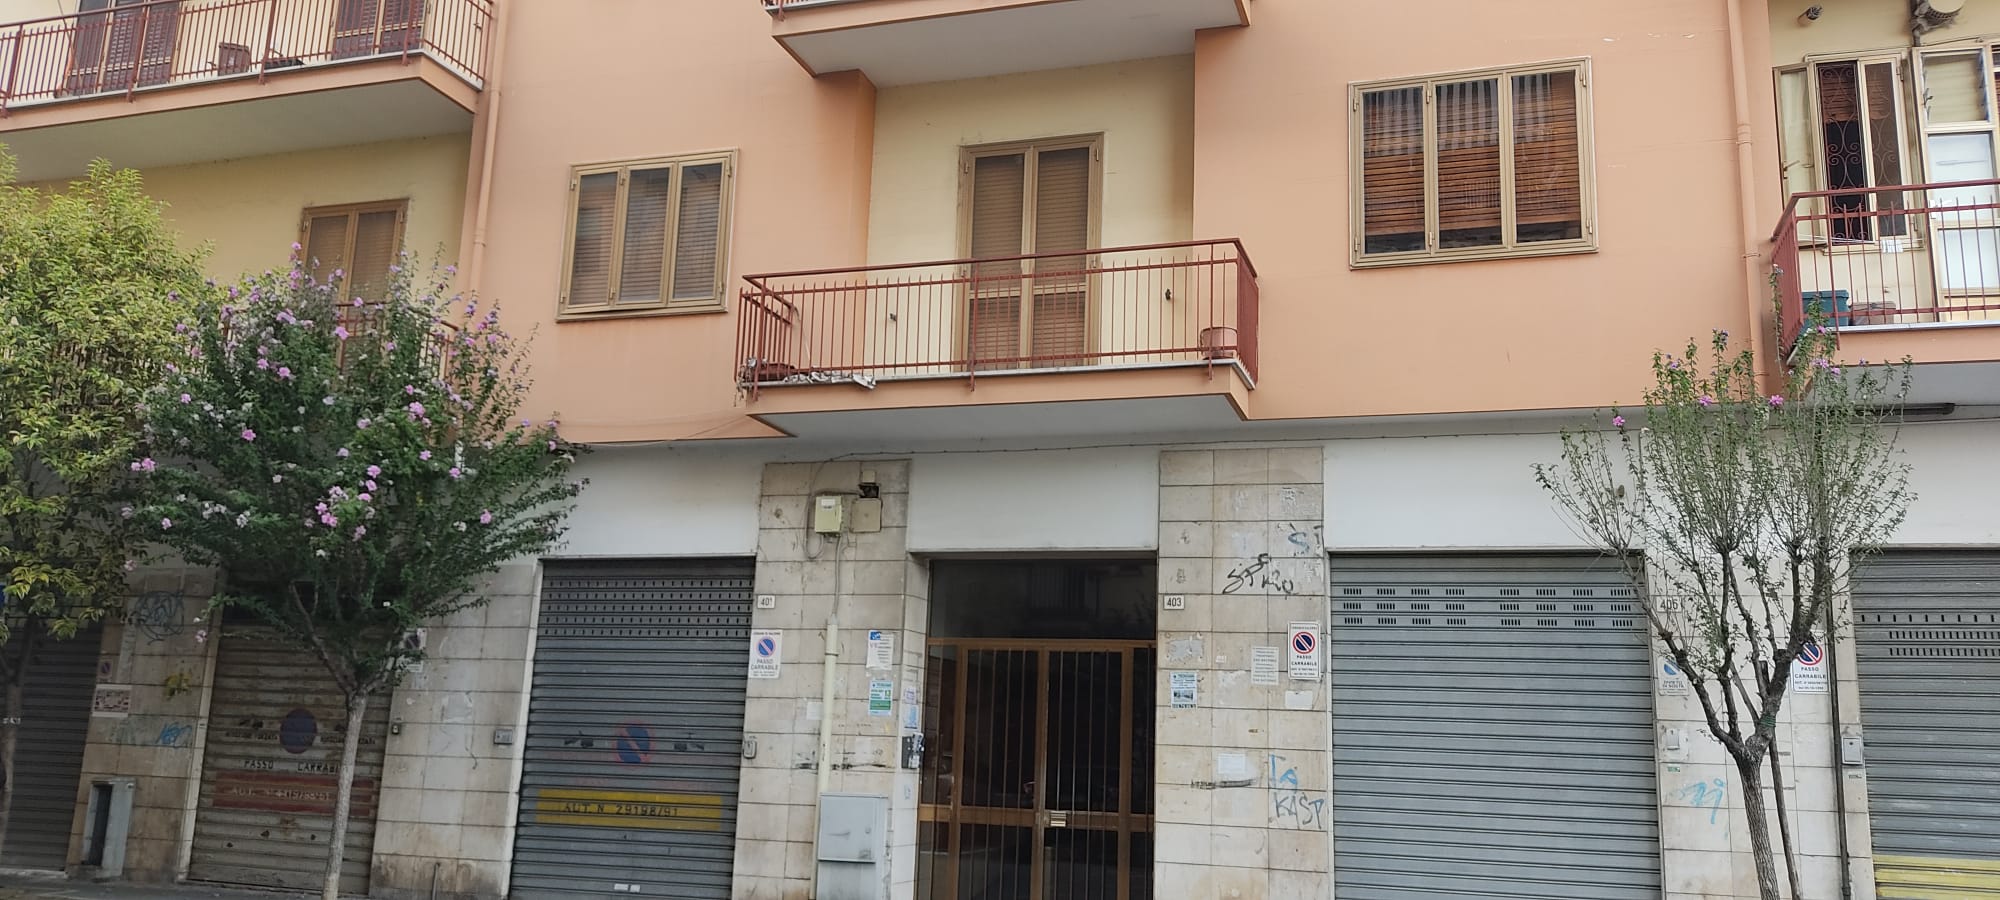 Appartamento ristrutturato con terrazzo a livello in vendita in zona Guercio a Salerno